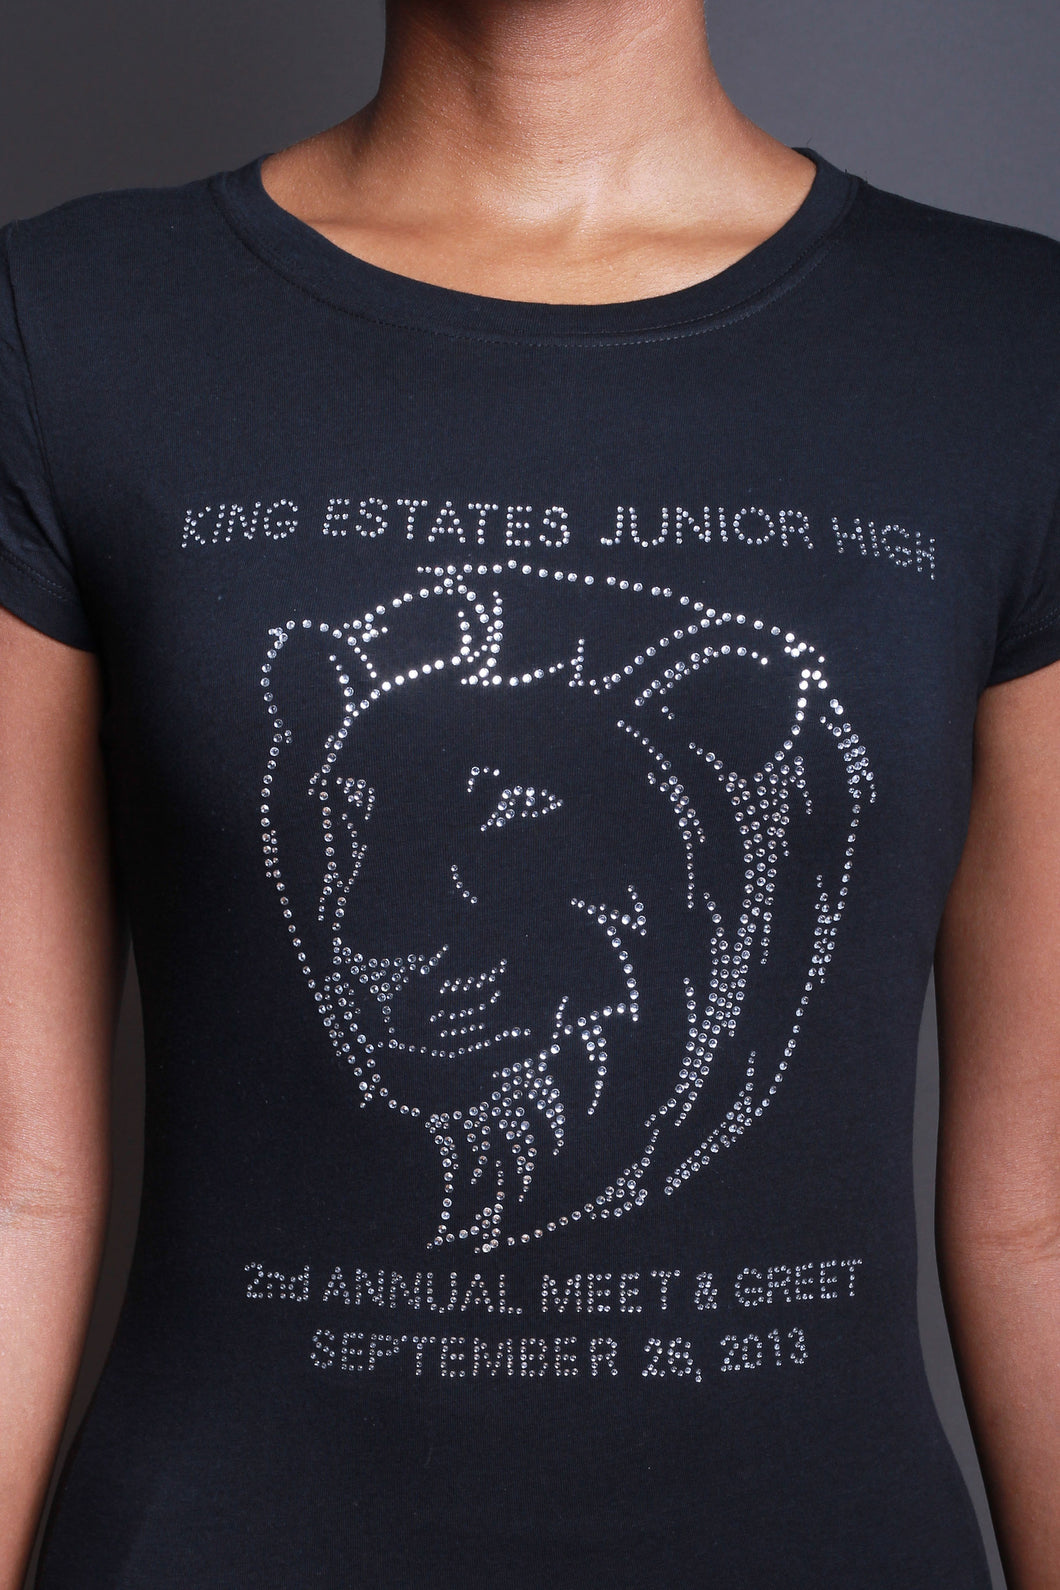 King Estates Jr. High